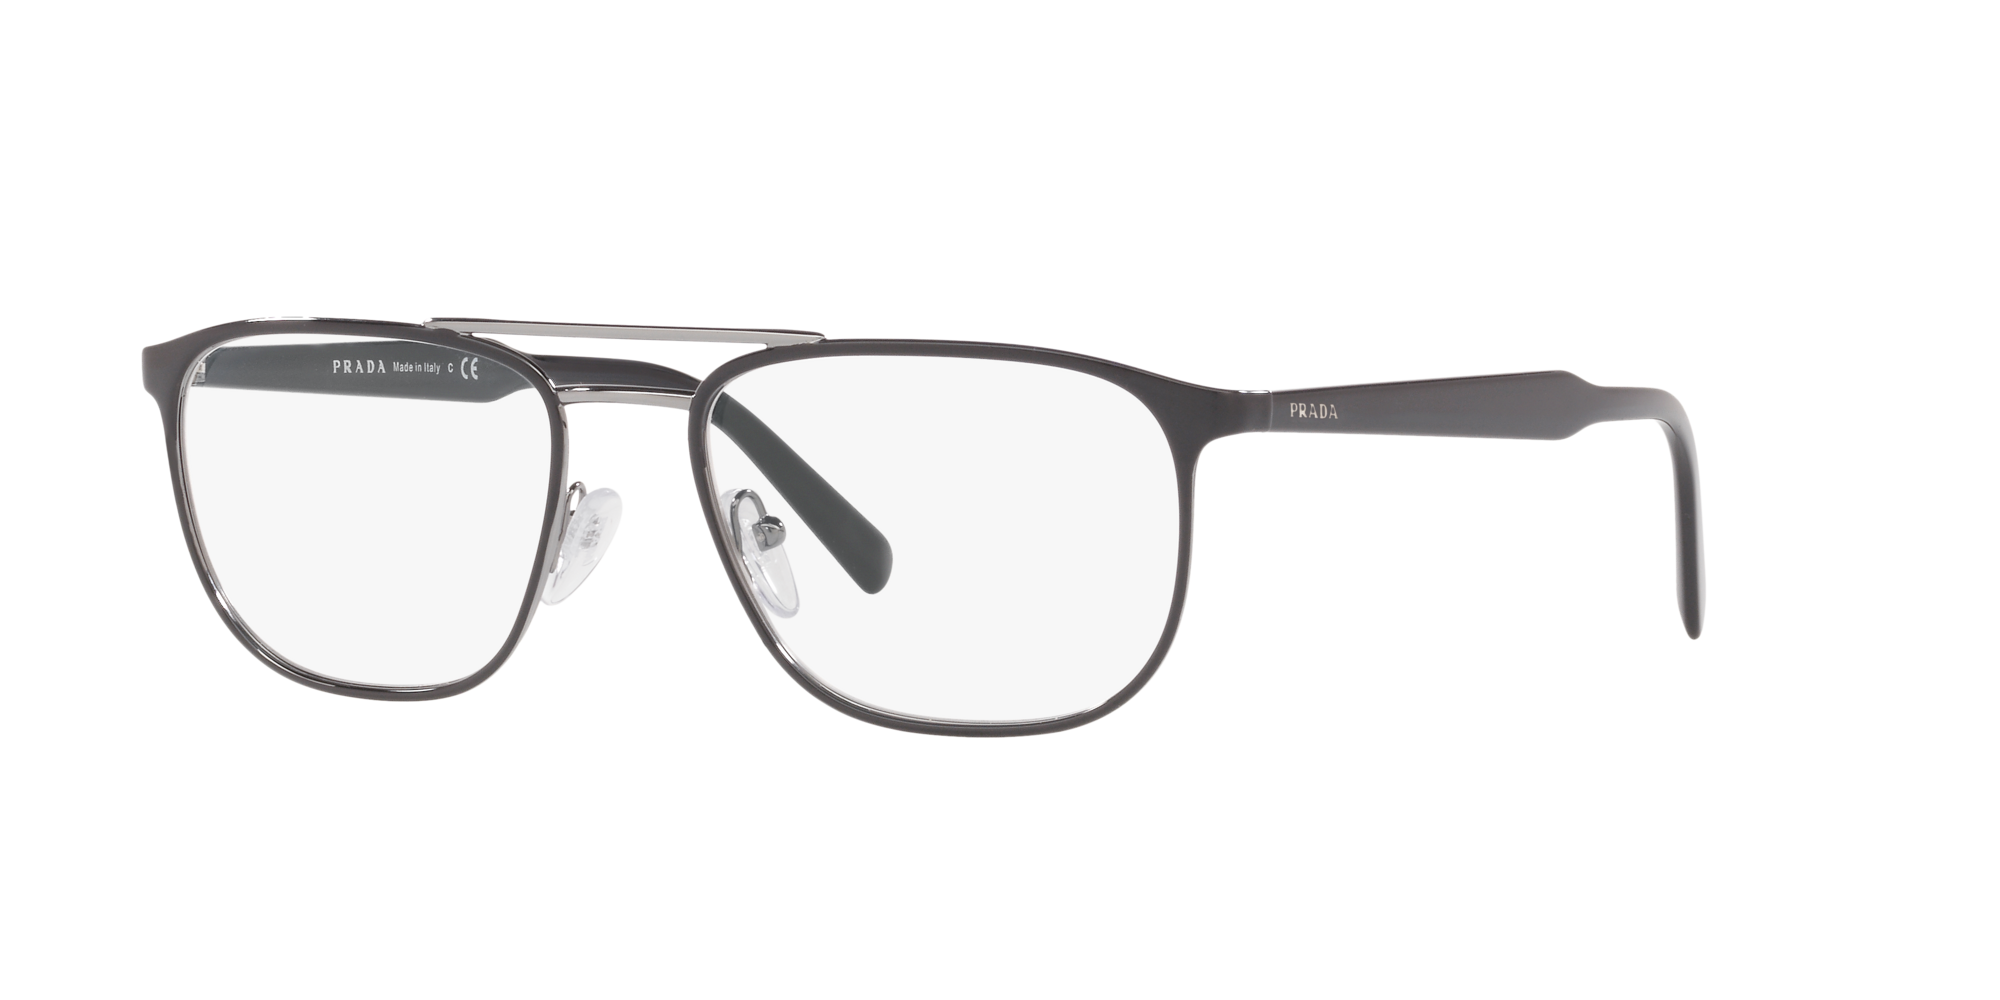 prada conceptual glasses